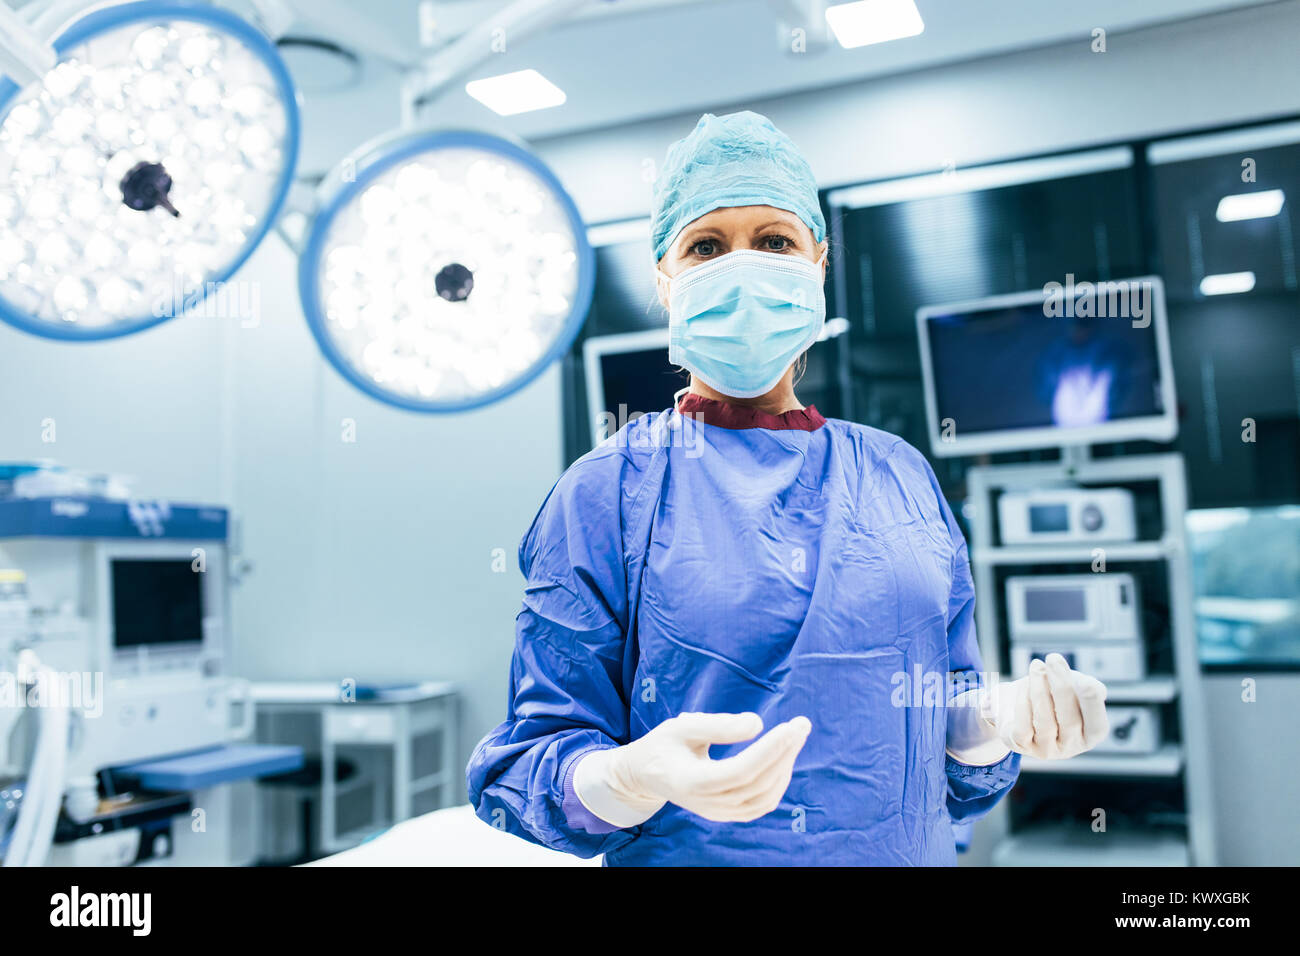 Portrait des Chirurgen im Operationssaal, bereit, auf einen Patienten zu arbeiten. Weibliche medizinischer Arbeiter chirurgische Uniform im Operationssaal. Stockfoto